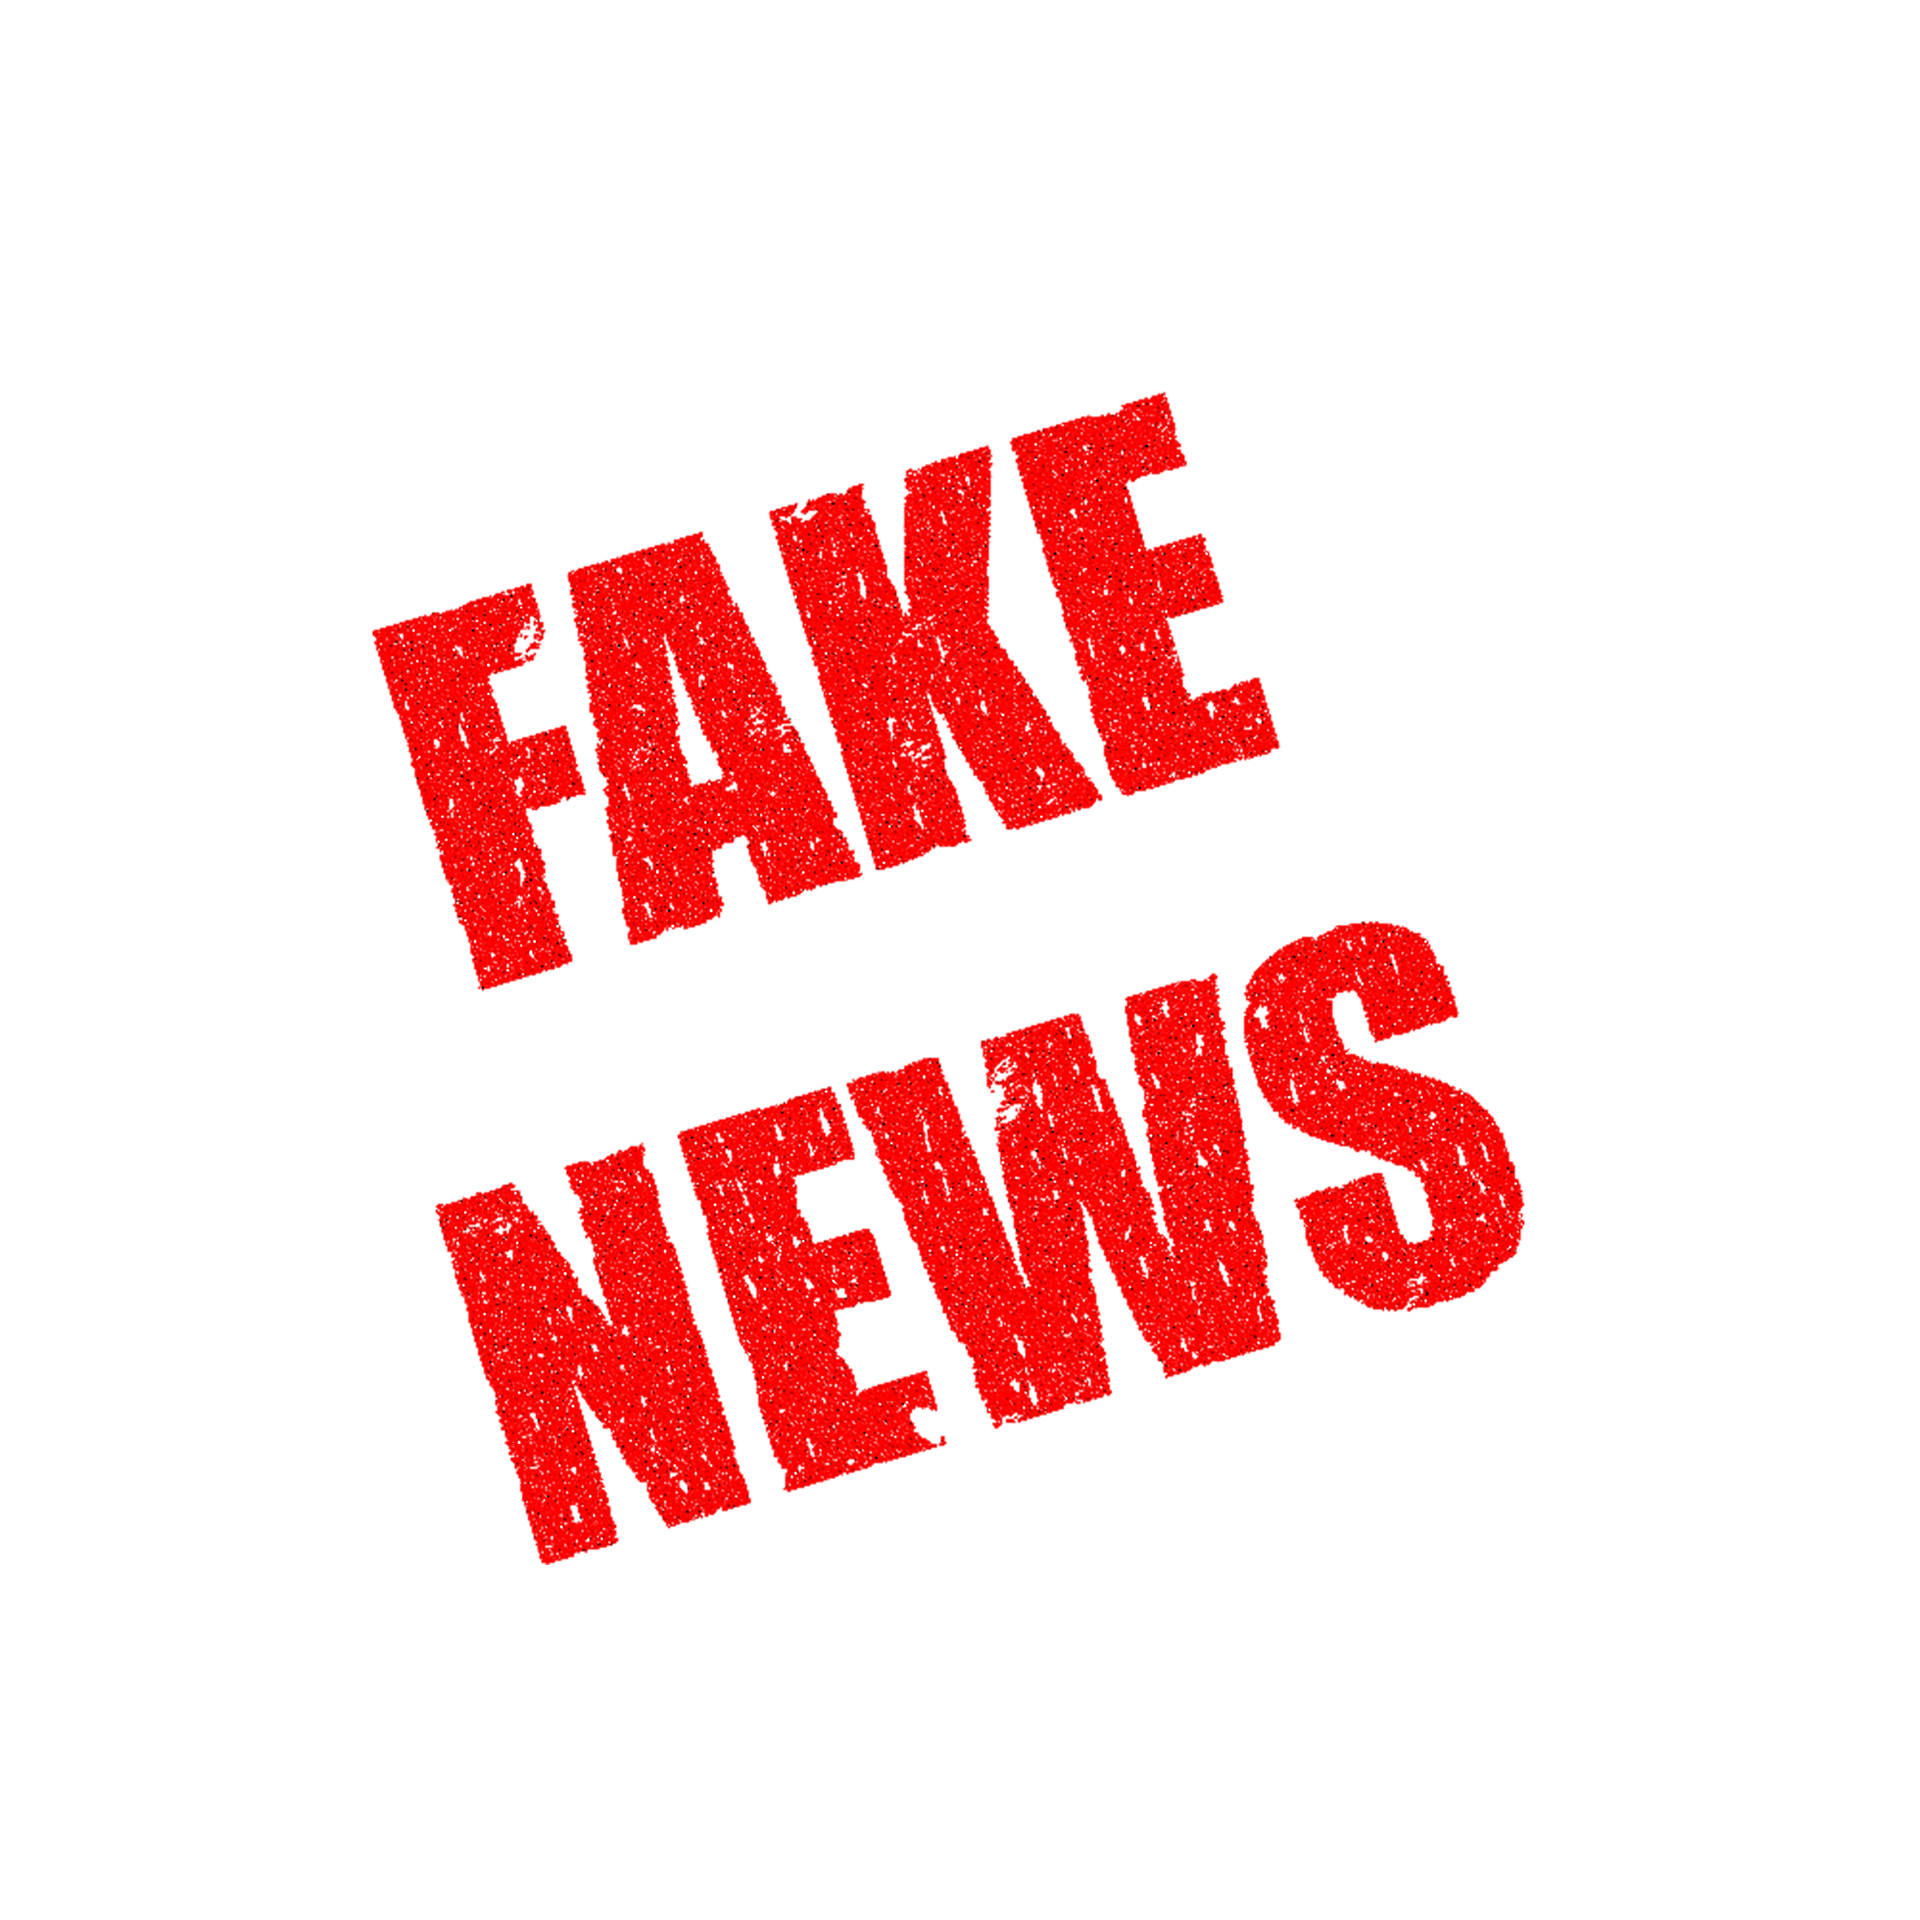 Fake news - source: pixabay